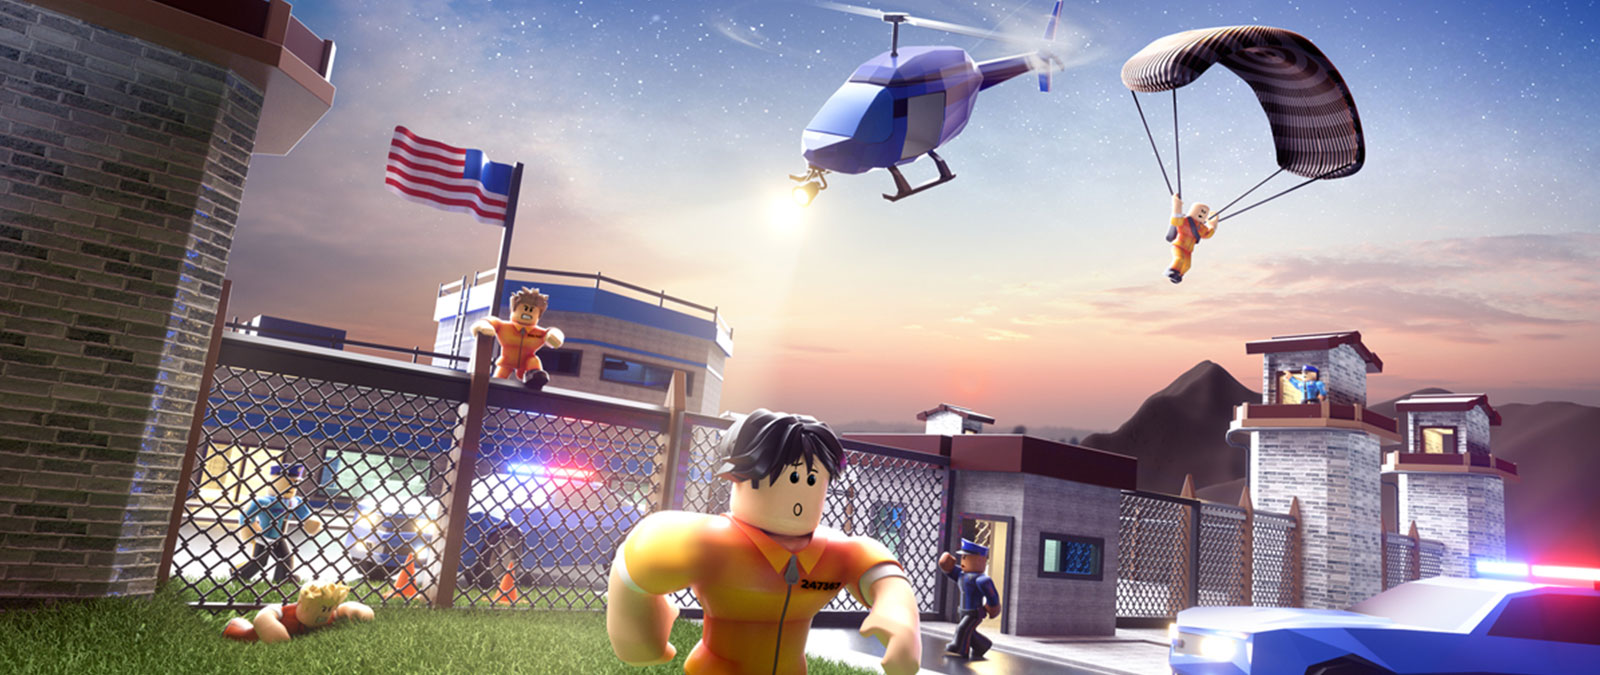 Personagens do Roblox escapam da prisão enquanto a polícia os persegue no jogo Jailbreak